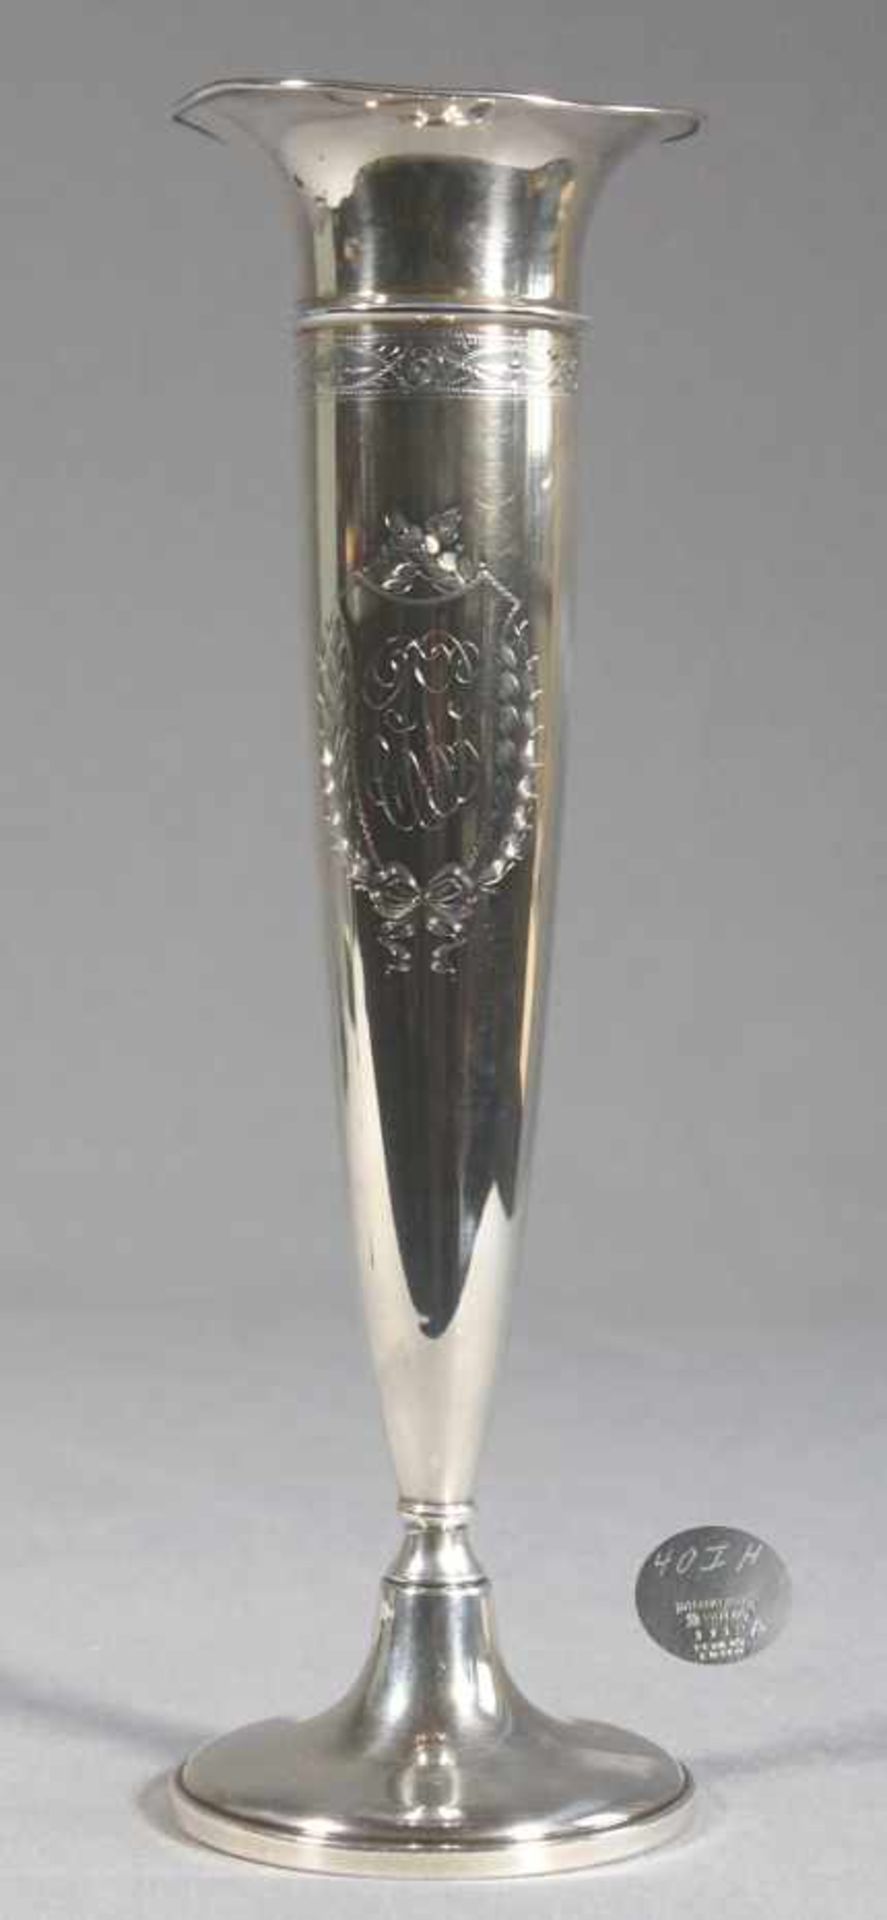 1 Stangenvase Sterlingsilber (925/000), gepunzt, England, auf gefülltem runden Fuß, nach oben